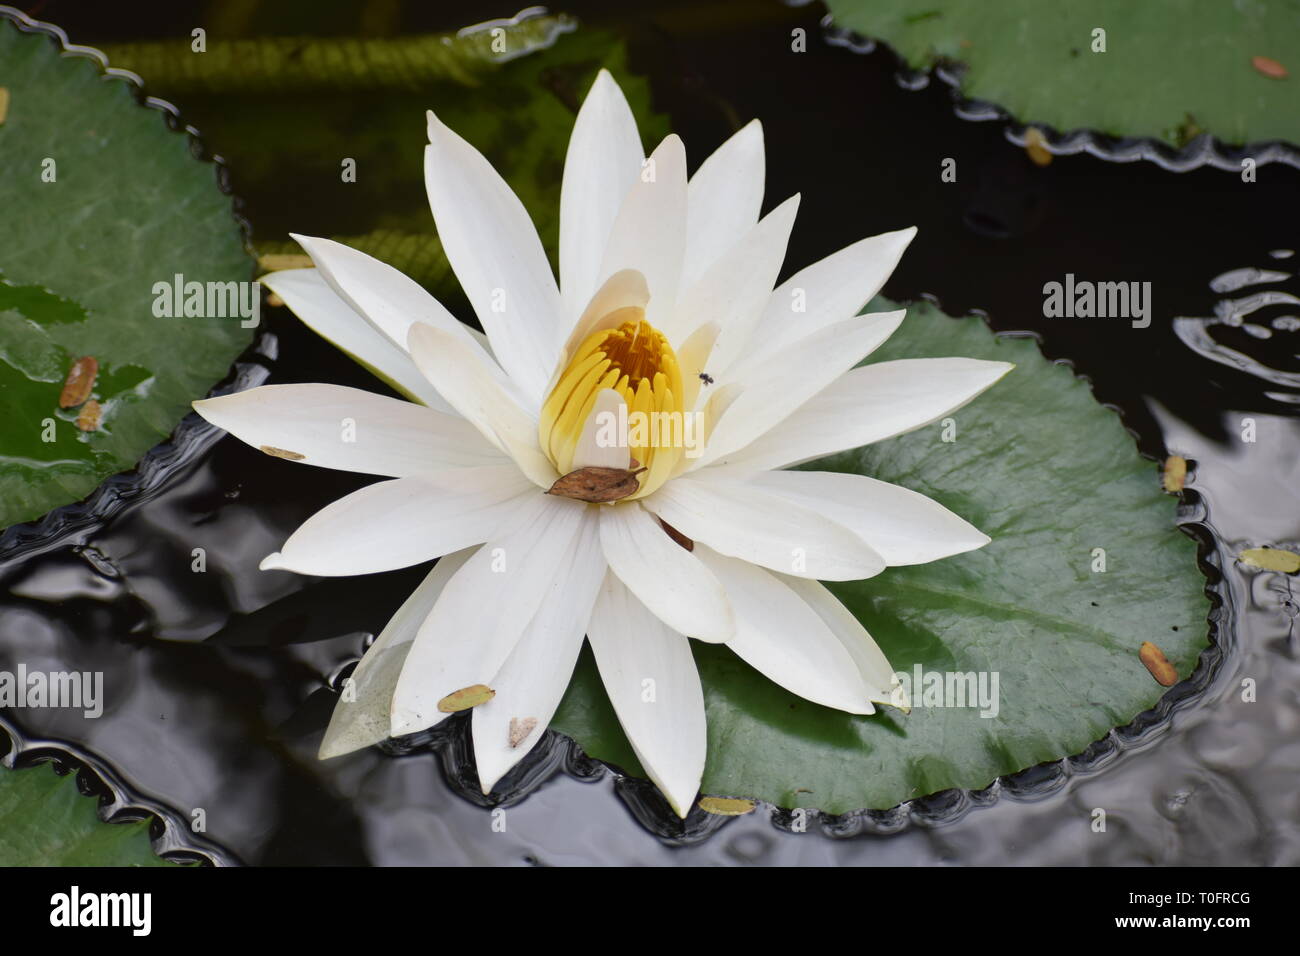 Un insecto volador atraídos a este hermoso loto blanco flotante. Foto de stock